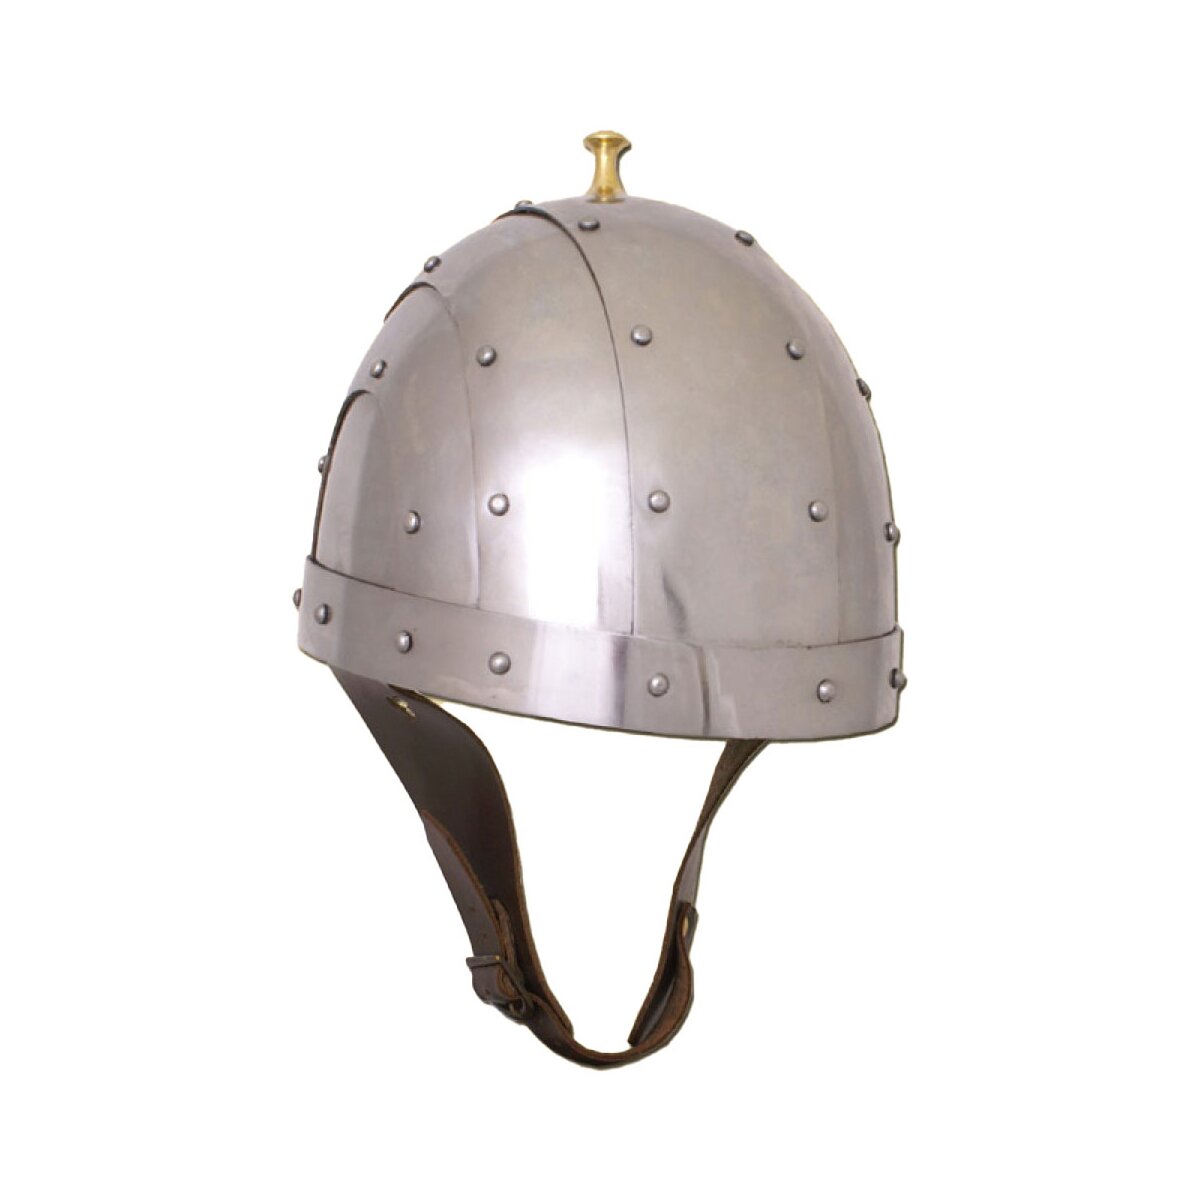 Byzantinischer Helm aus 2 mm Stahl - schaukampftauglich